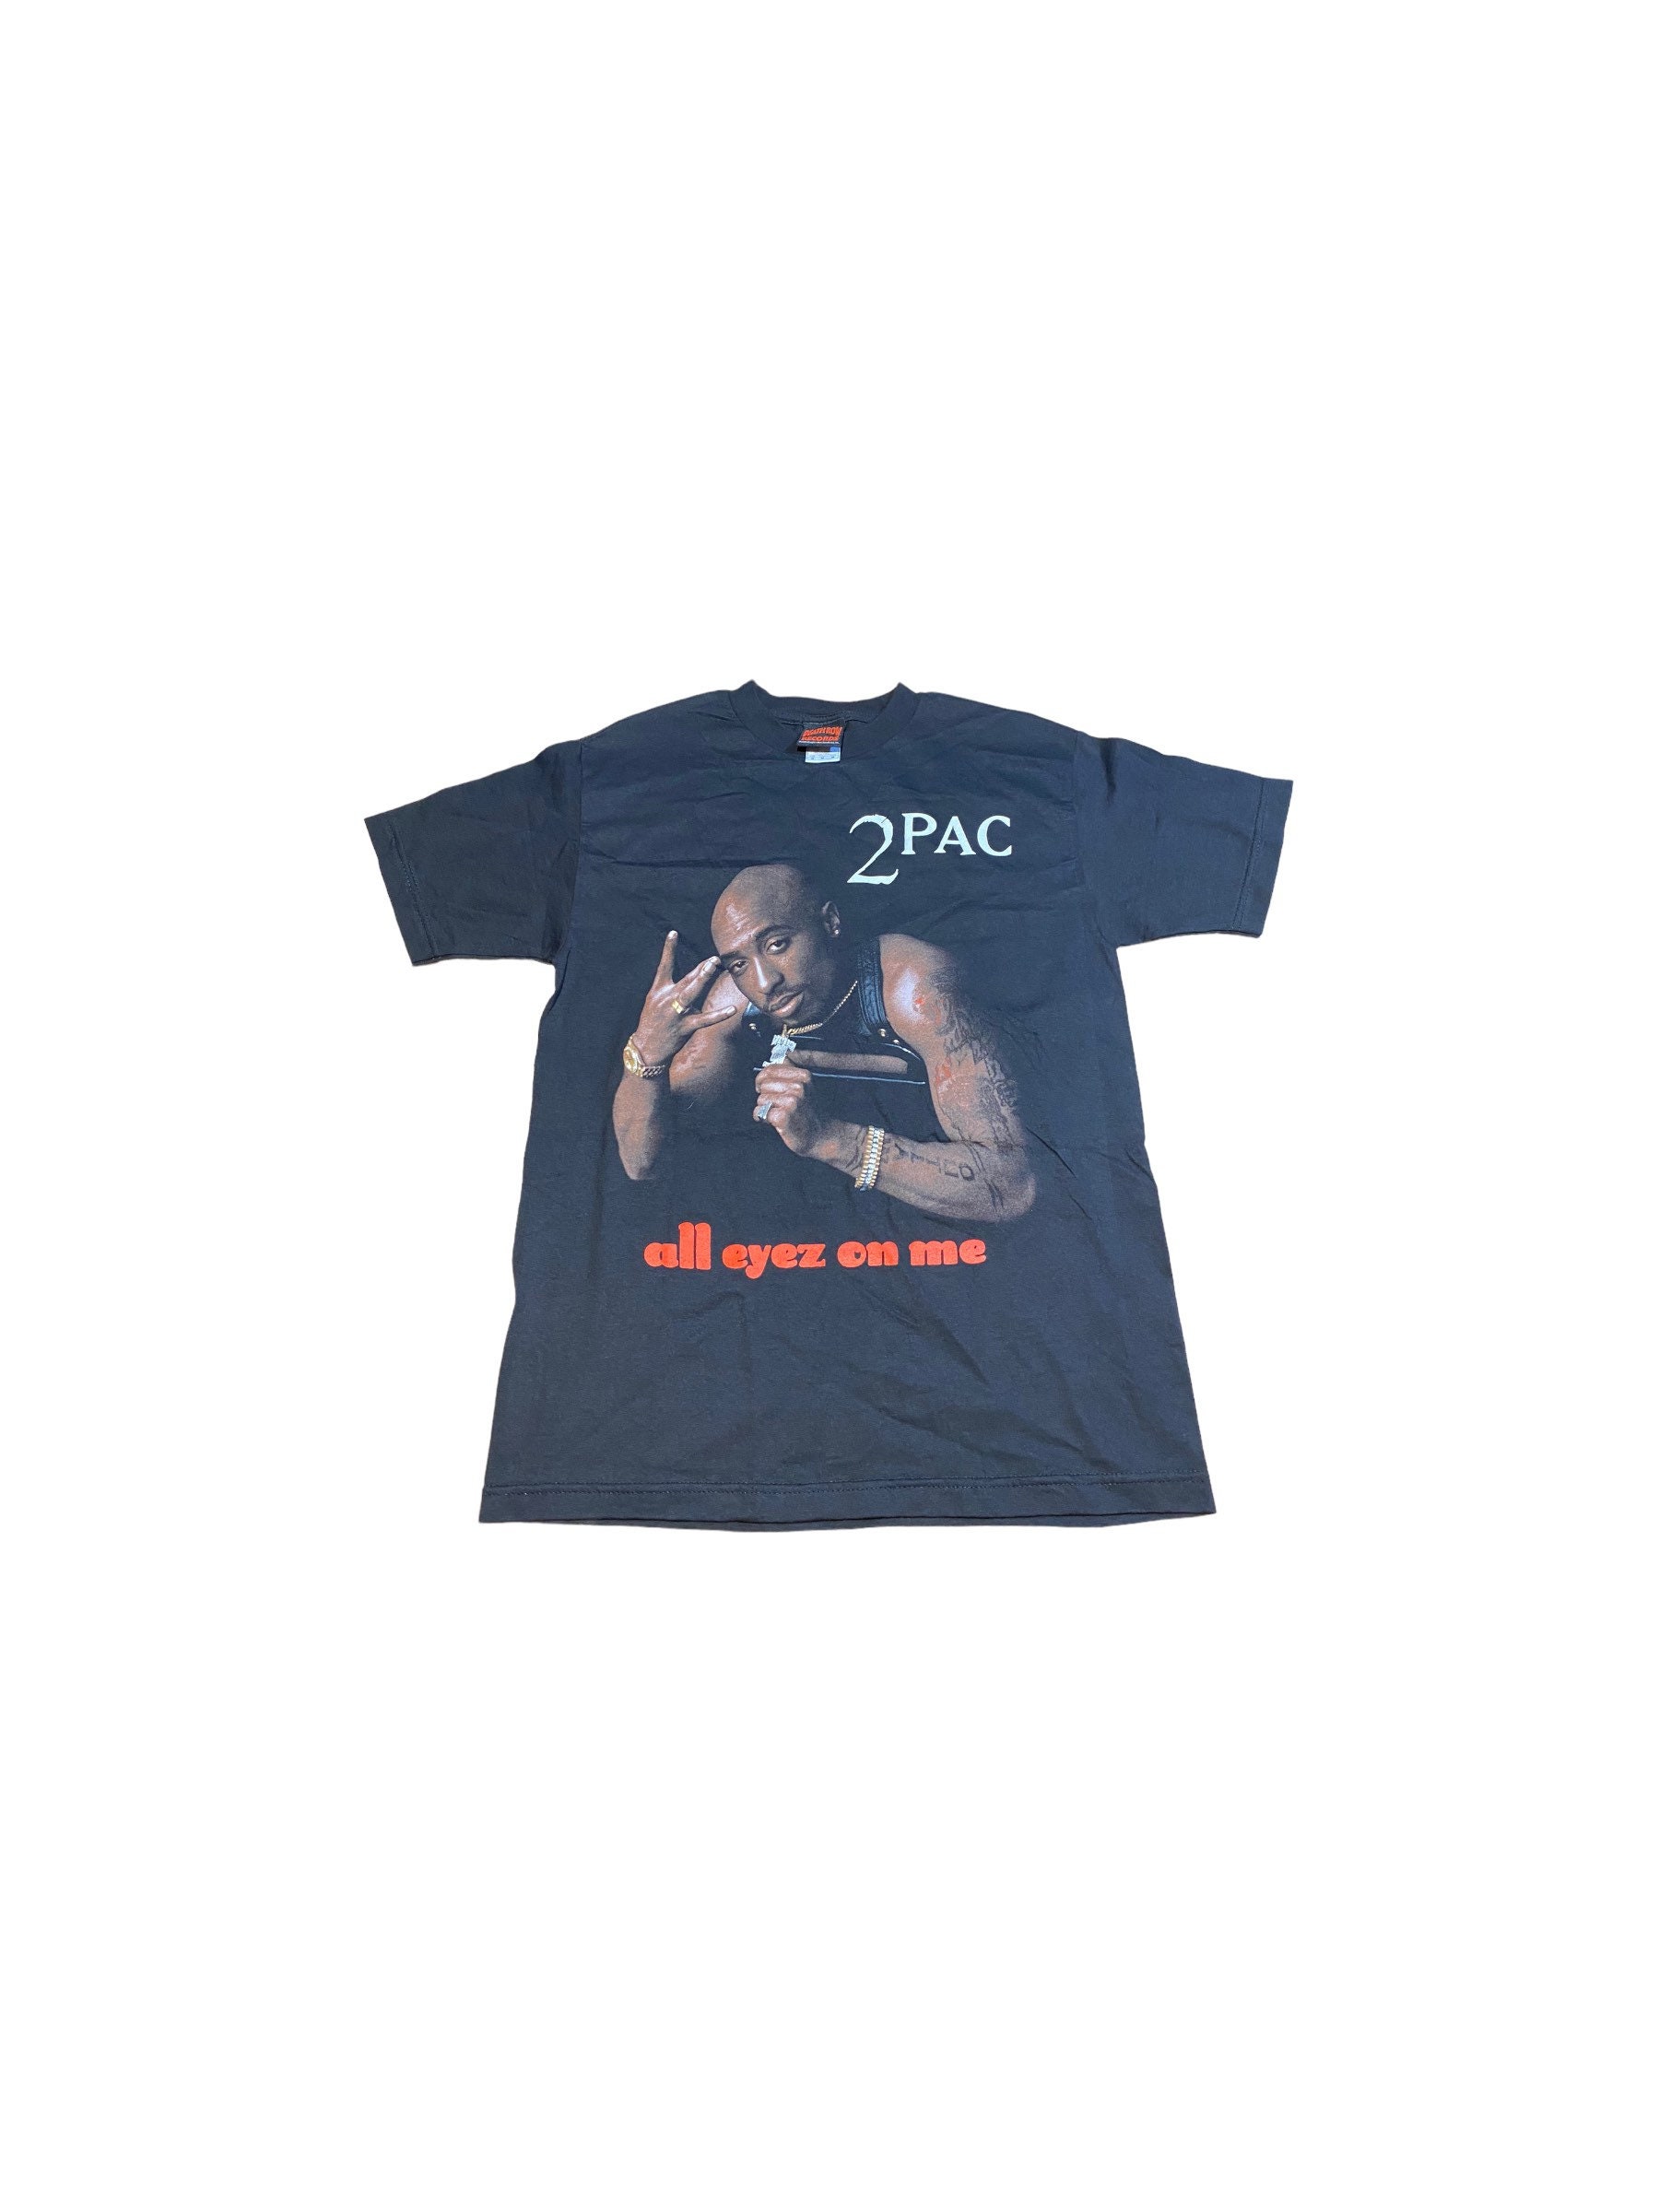 Tupac Shirt Etsy - Makaveli